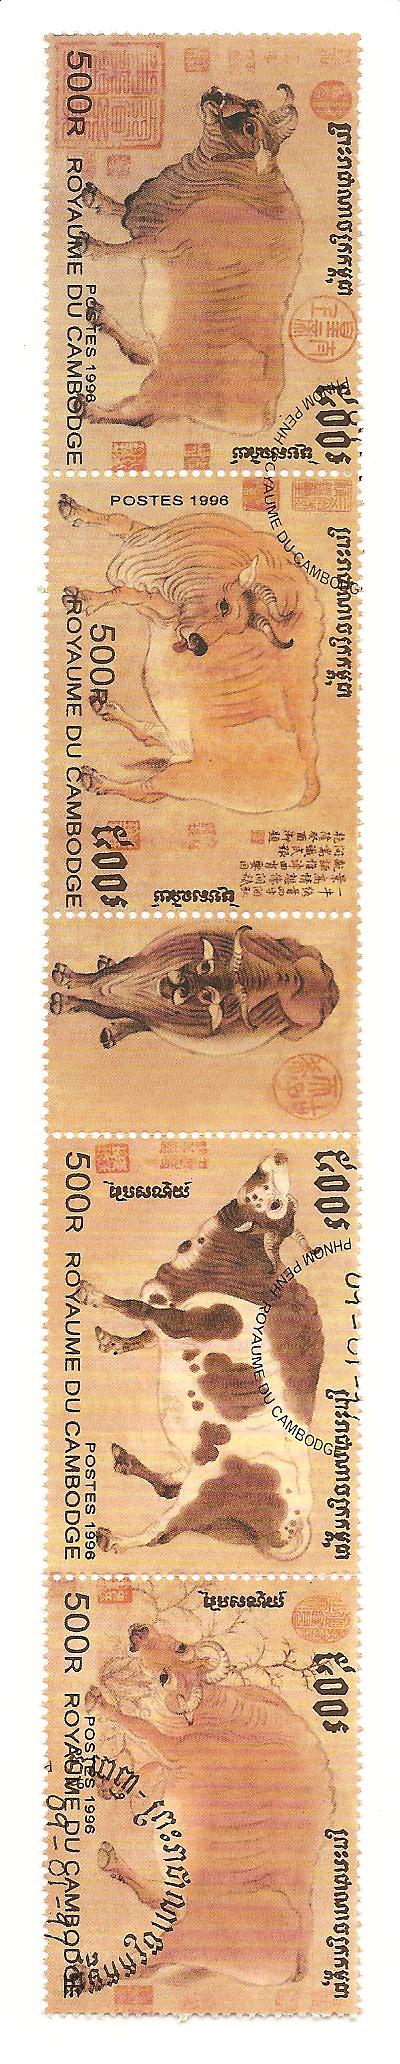 51869 - Cambogia - serie completa usata in striscia: Razze di bovini